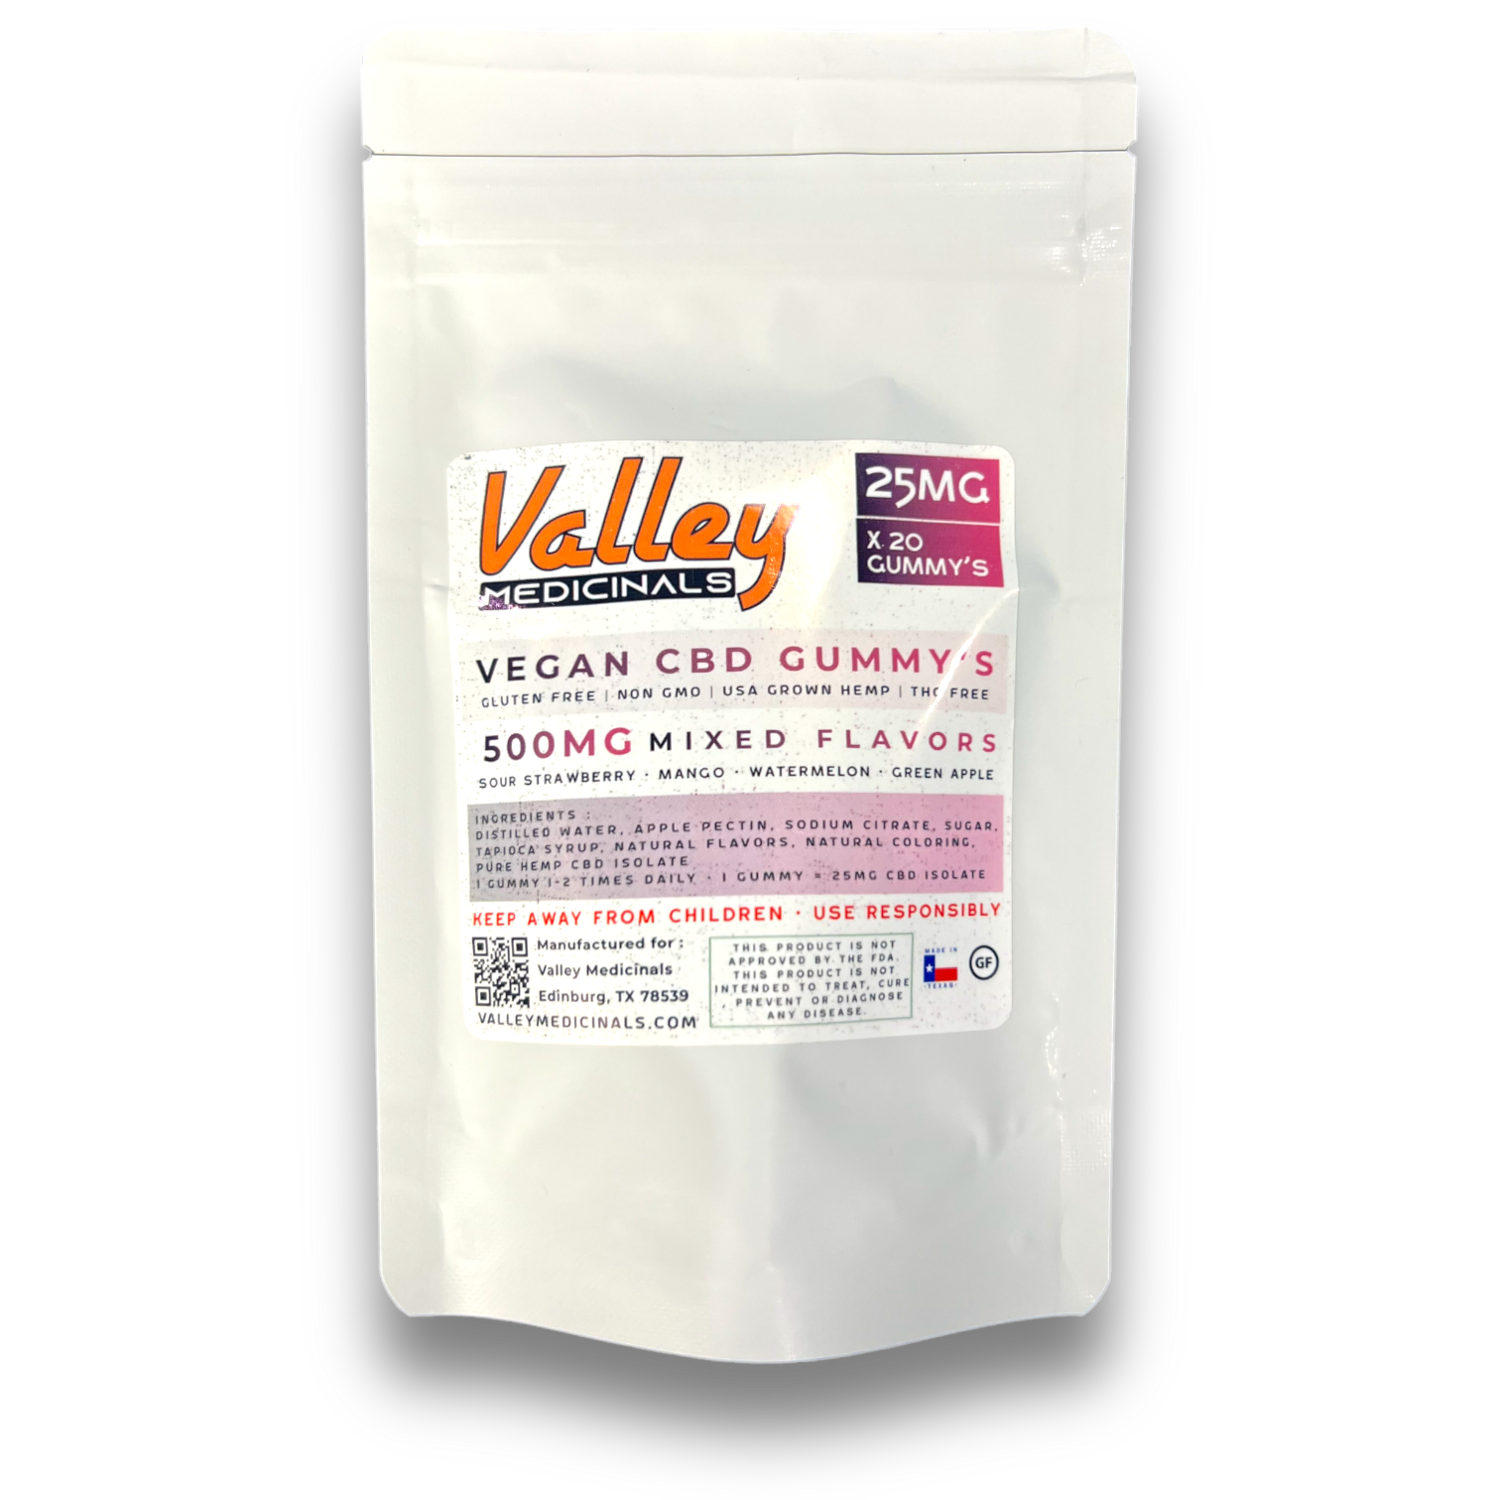 Valley Medicinals' Vegan CBD Gummy's 25MG